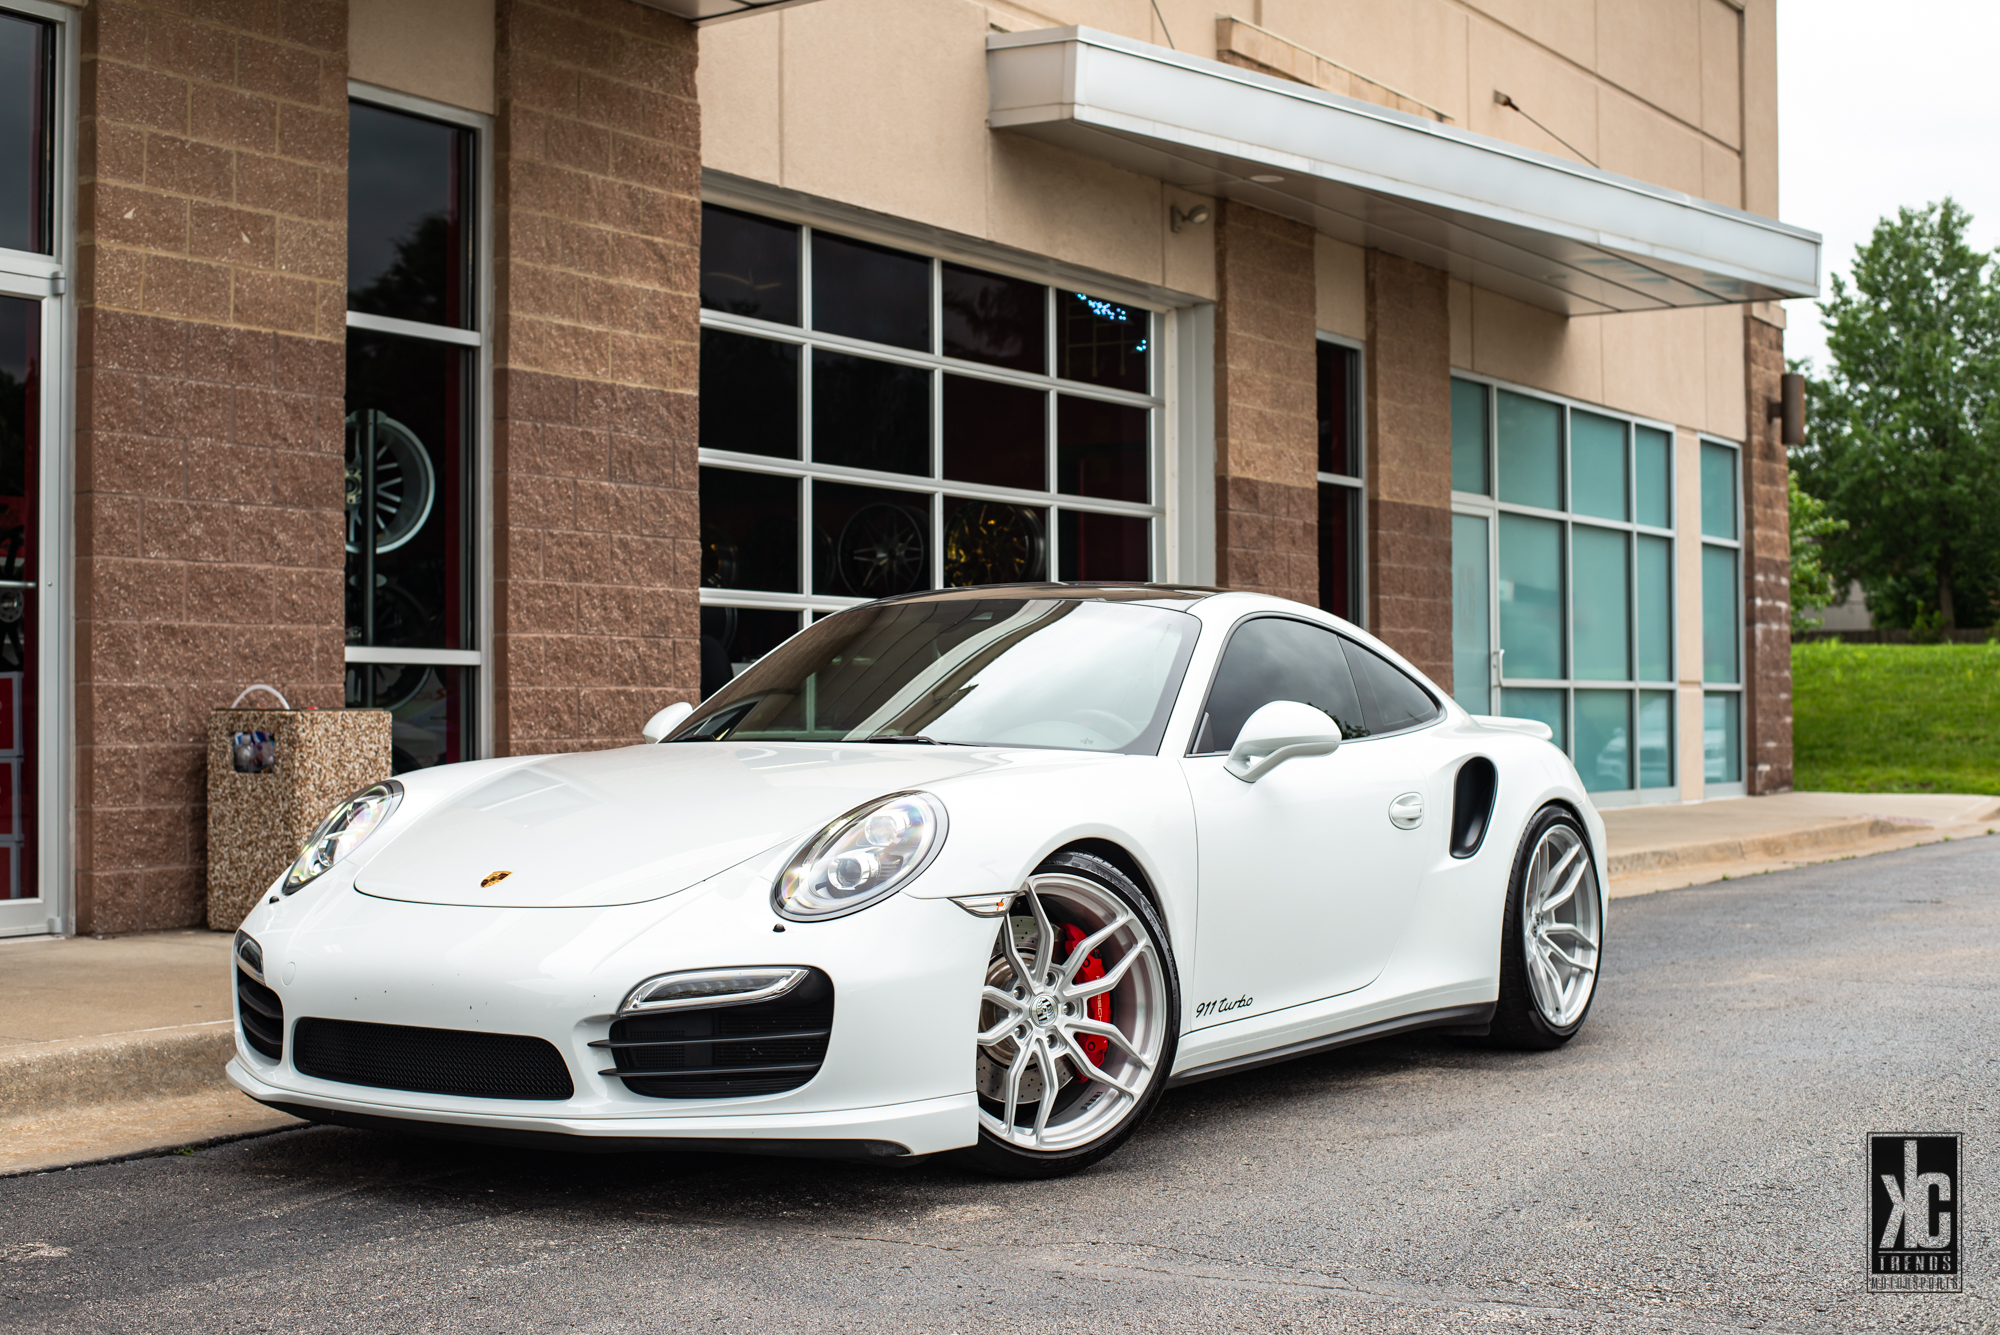  Porsche 911 with 